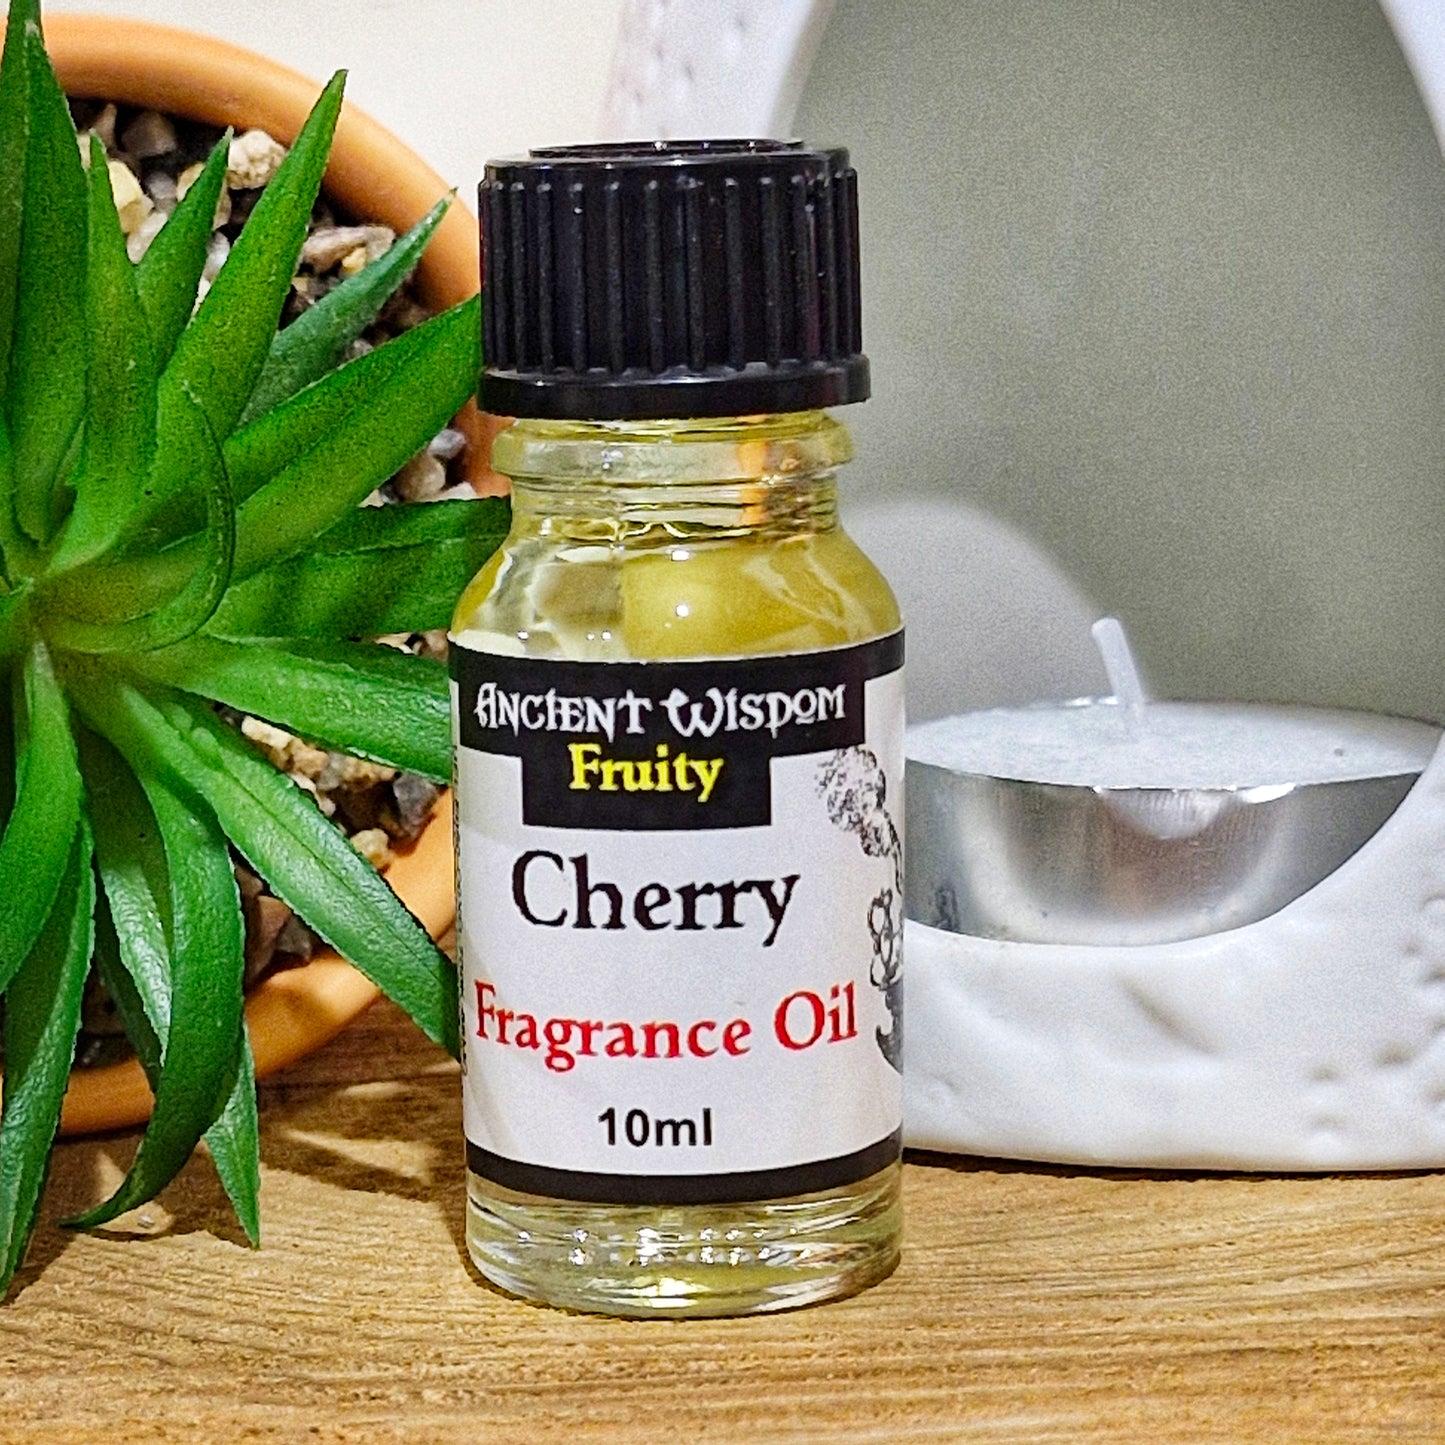 A 10ml bottle of cherry fragrance oil 